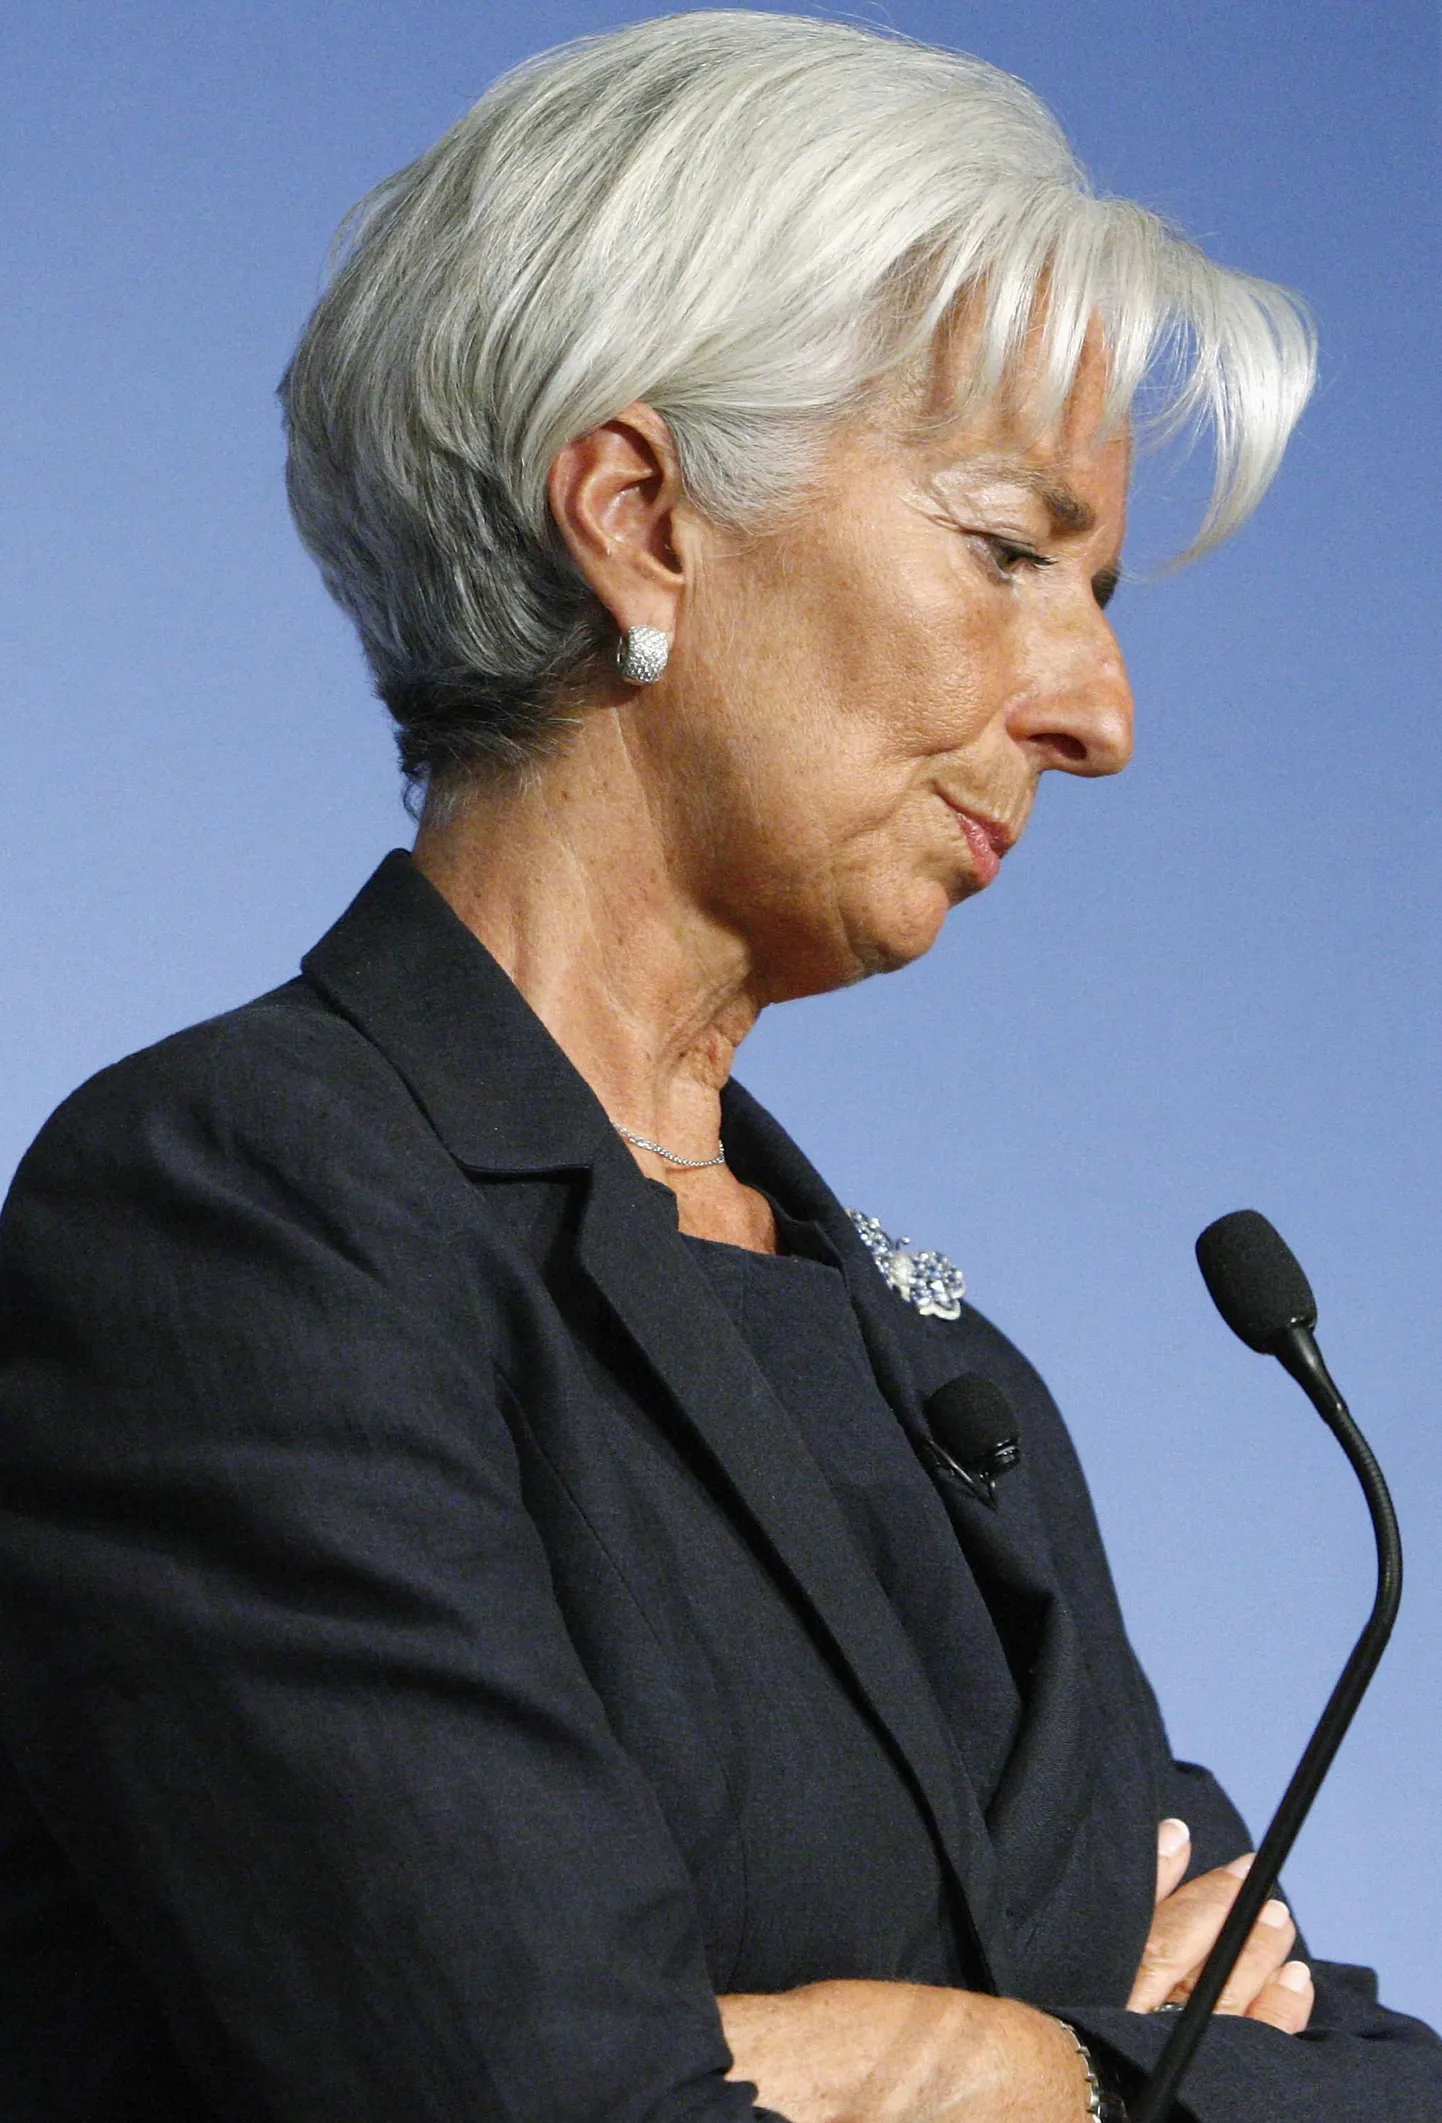 Rahvusvahelise Valuutafondi (IMF) tegevjuht Christine Lagarde